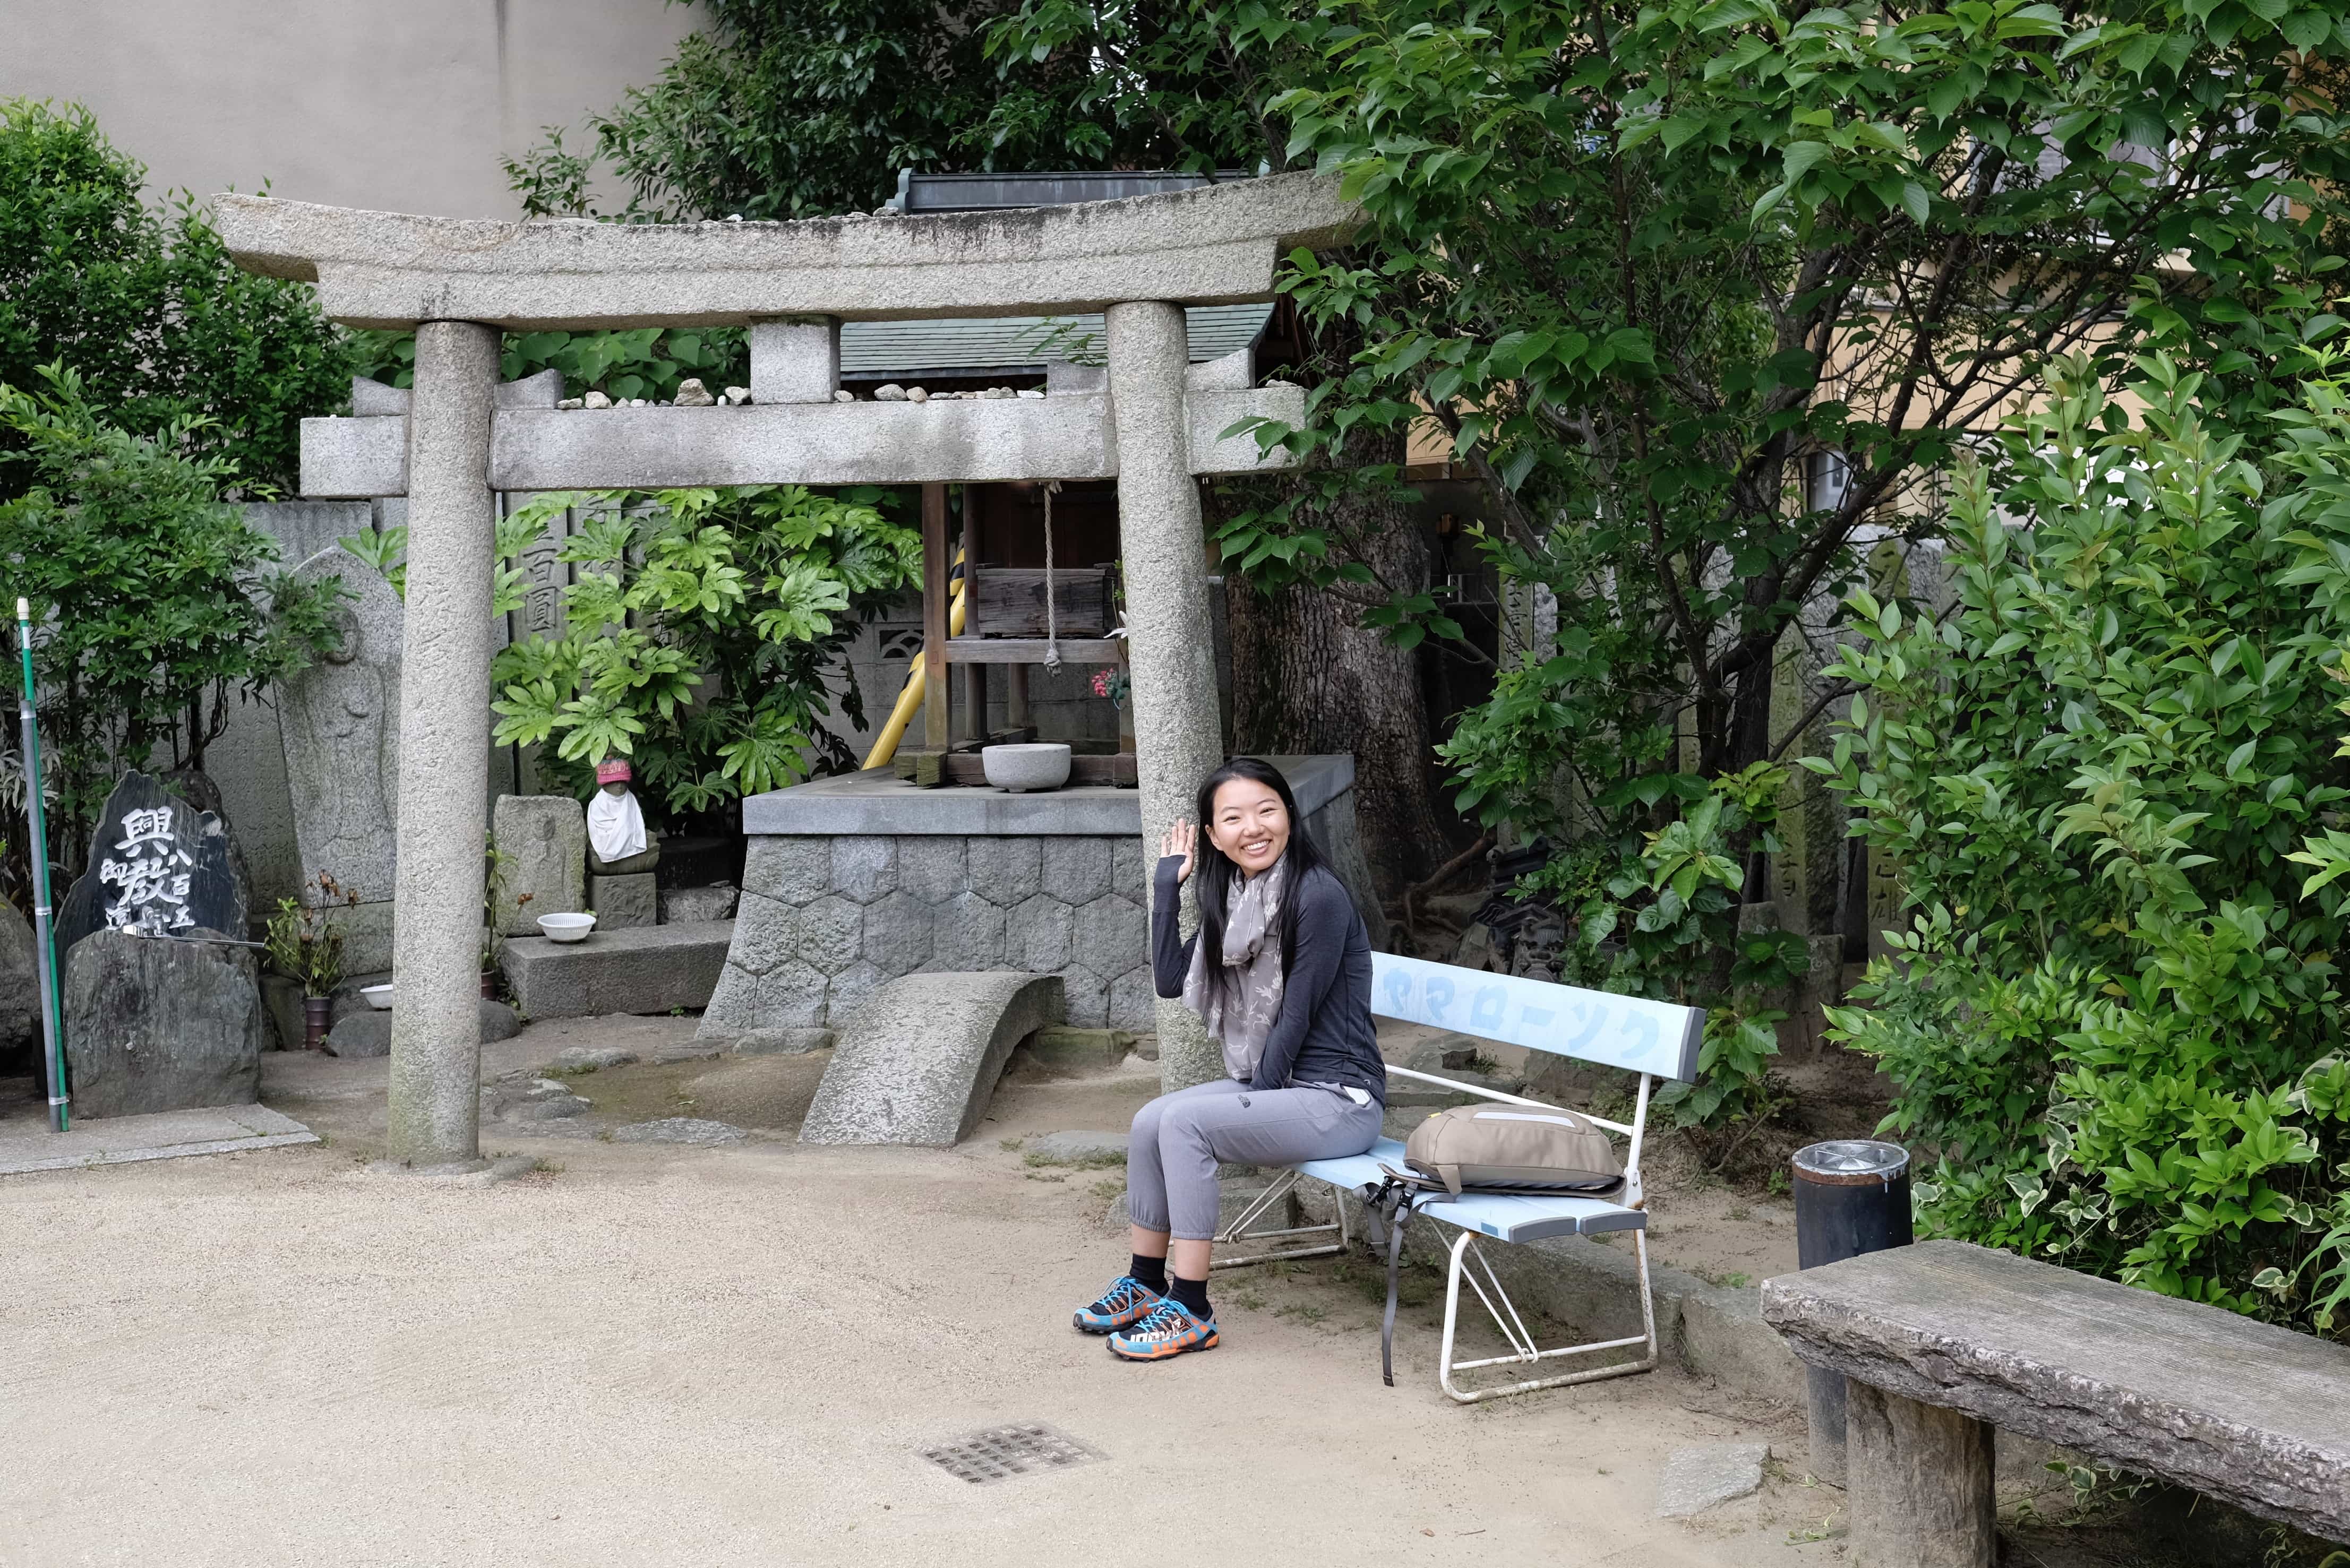 Chen at Enmyō-ji